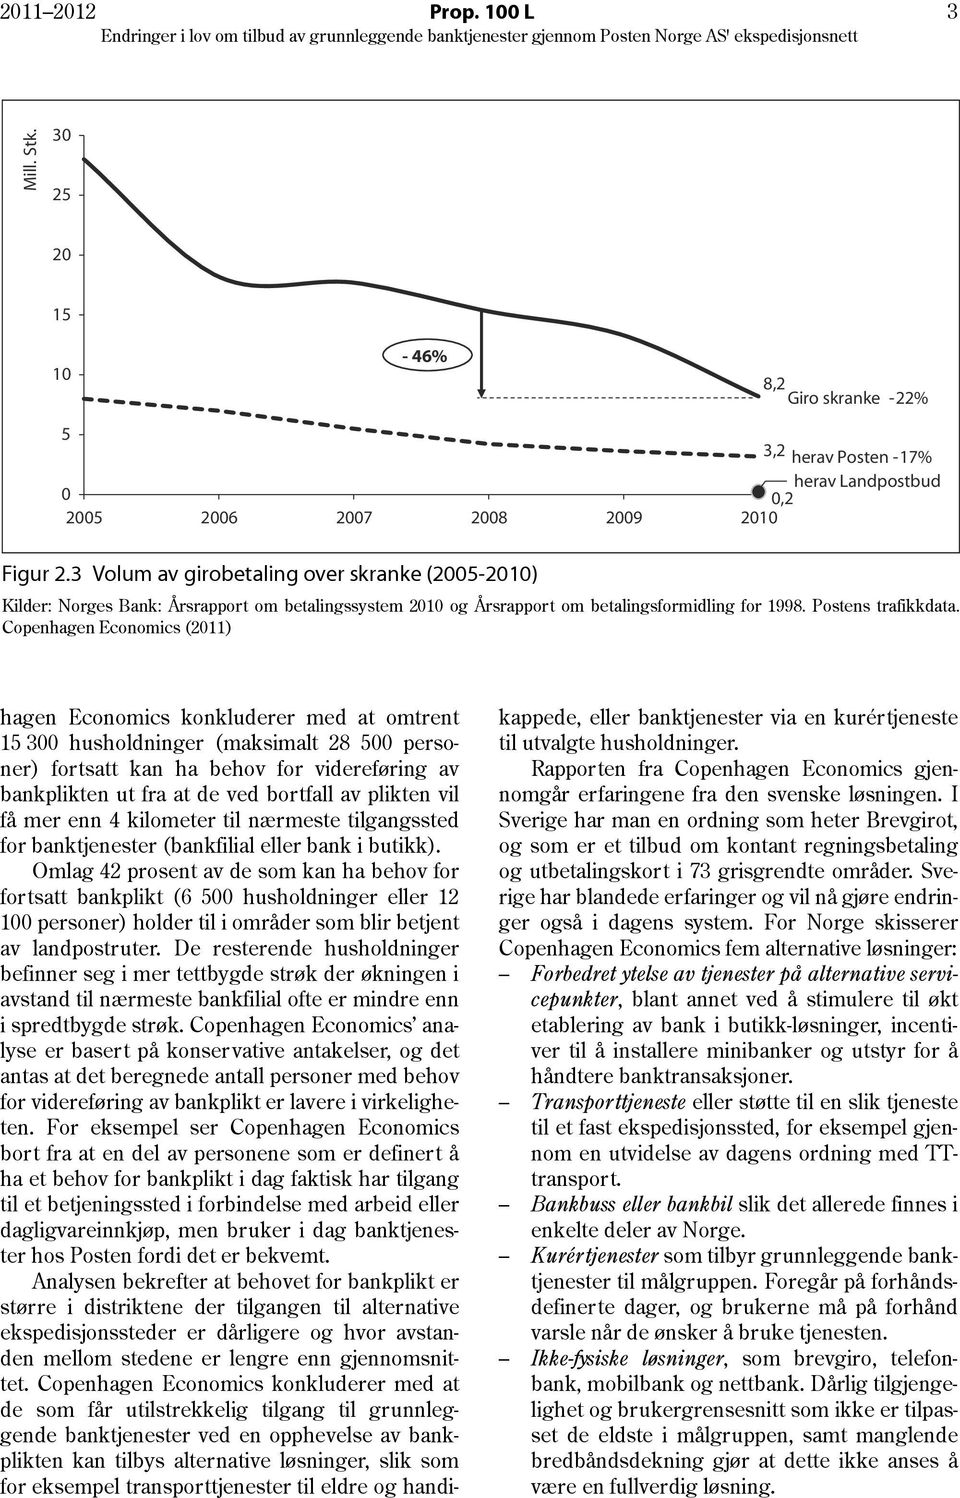 Copenhagen Economics (2011) hagen Economics konkluderer med at omtrent 15 300 husholdninger (maksimalt 28 500 personer) fortsatt kan ha behov for videreføring av bankplikten ut fra at de ved bortfall